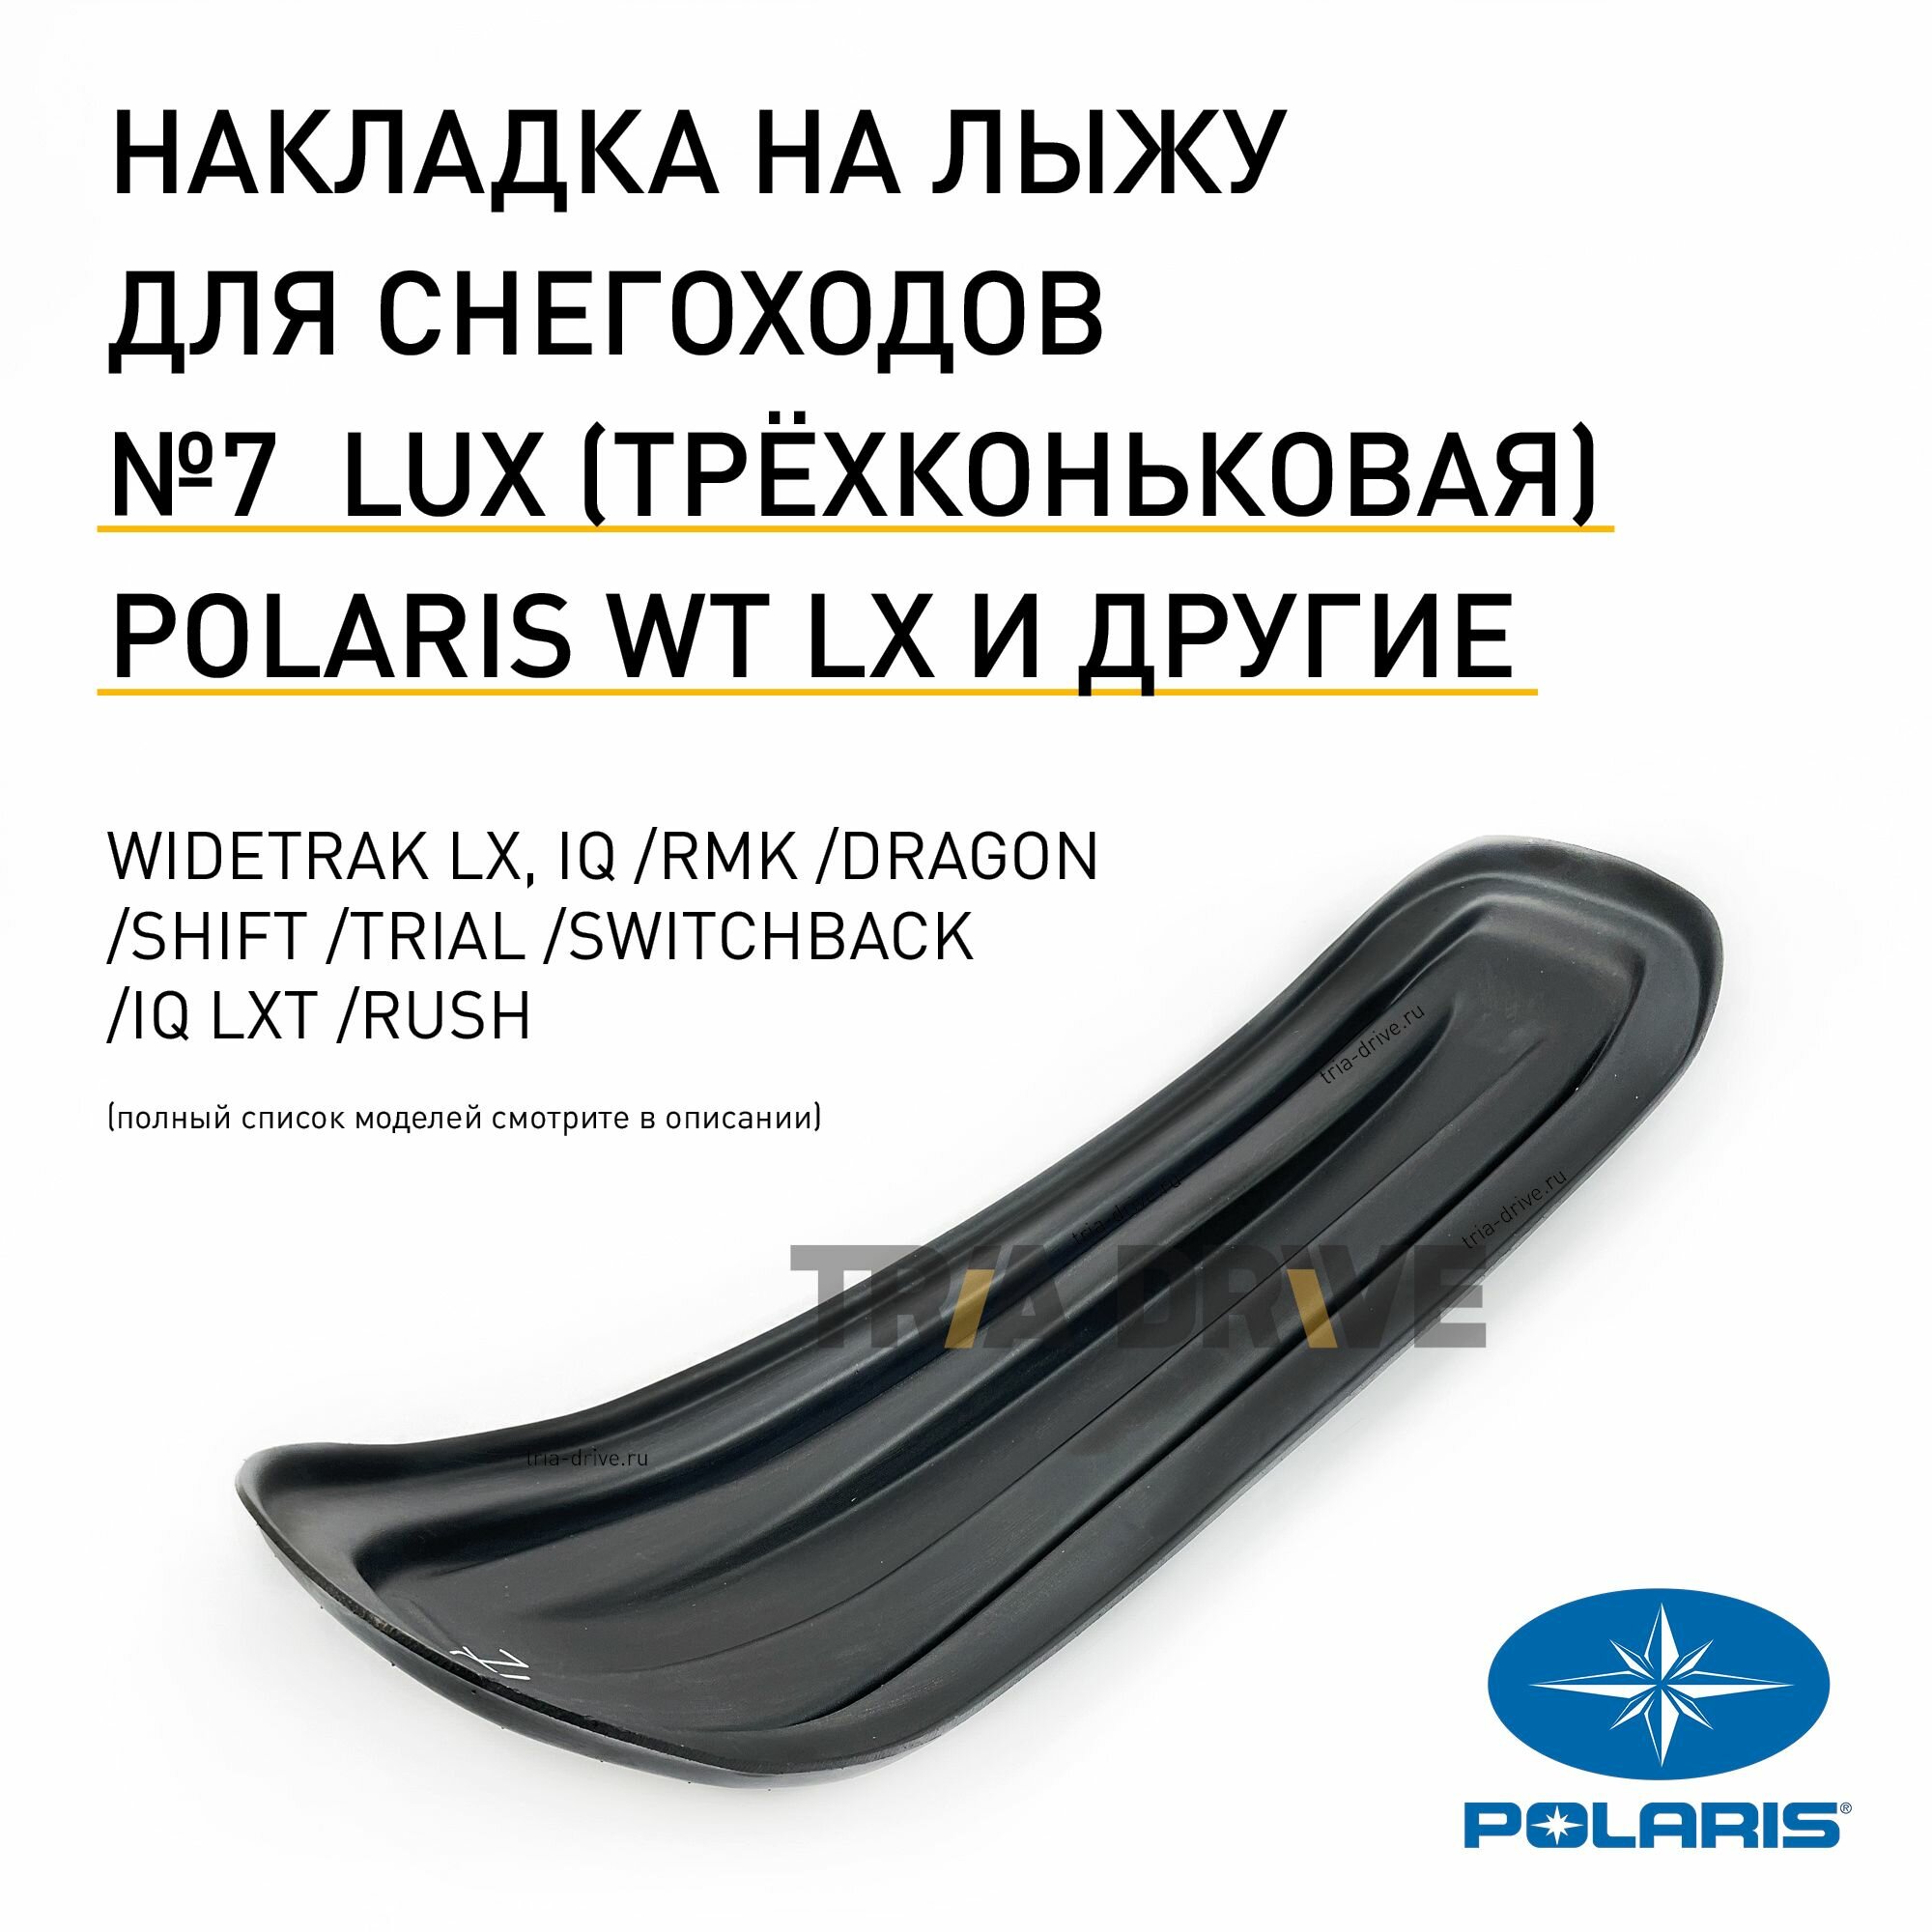 Накладки на лыжи №7 LUX для снегоходов Polaris WideTrak LX и других моделей / Улучшенная трёхконьковая накладка /TRIADRIVE